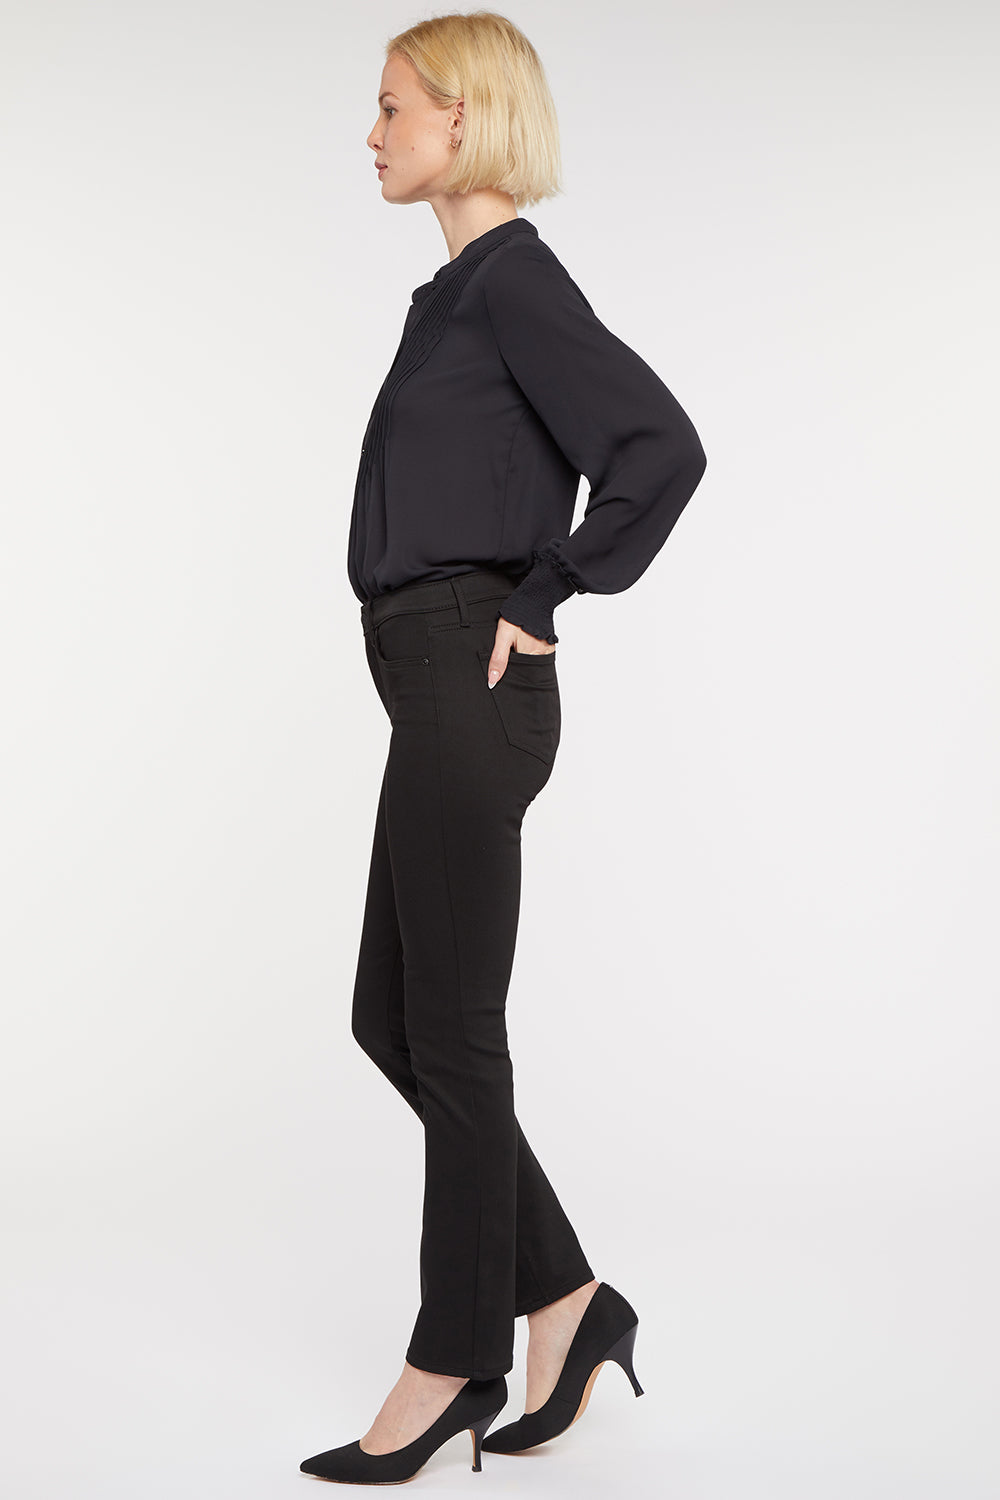 NYDJ Sheri Slim Jeans In Petite In BlackLast™ Denim - Black Rinse